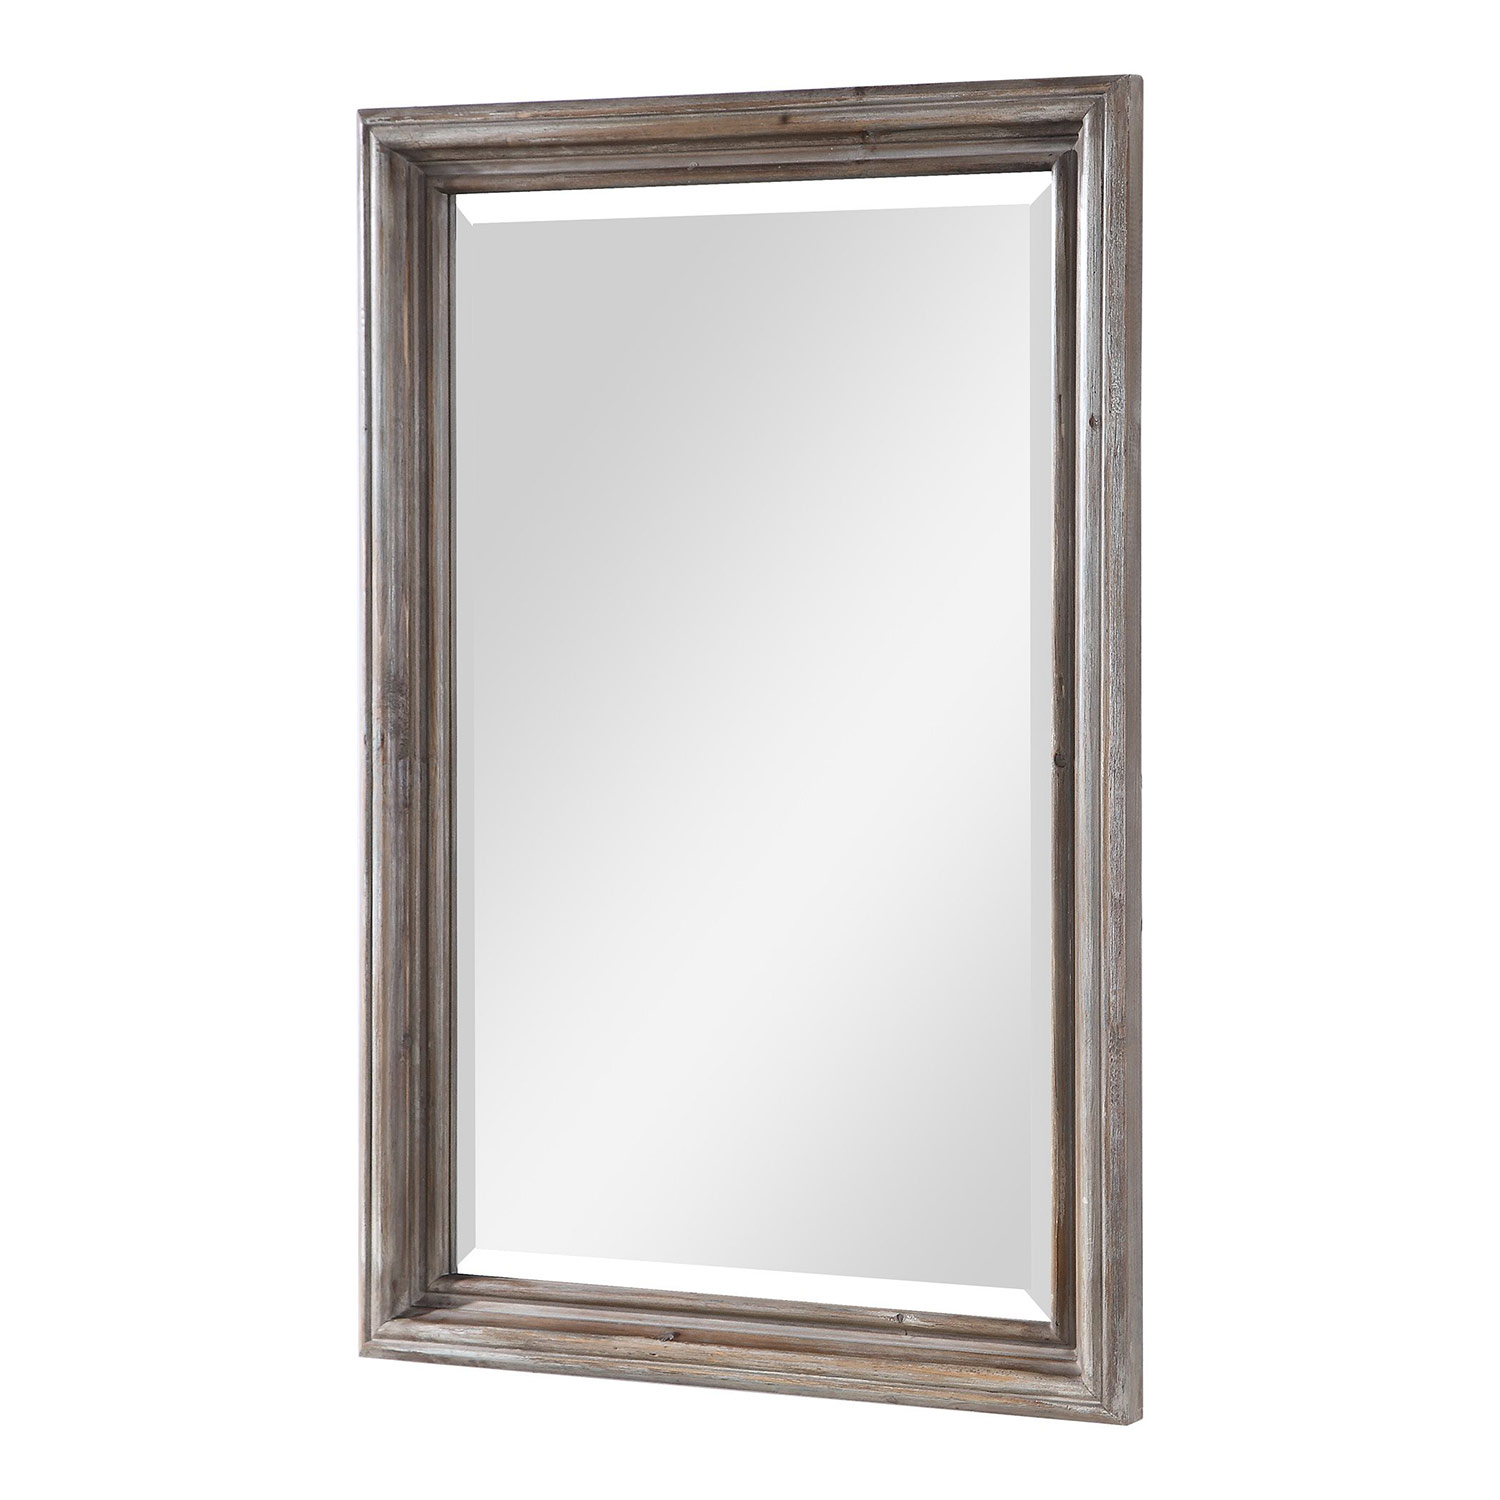 Uttermost Fielder Distressed Vanity Mirror